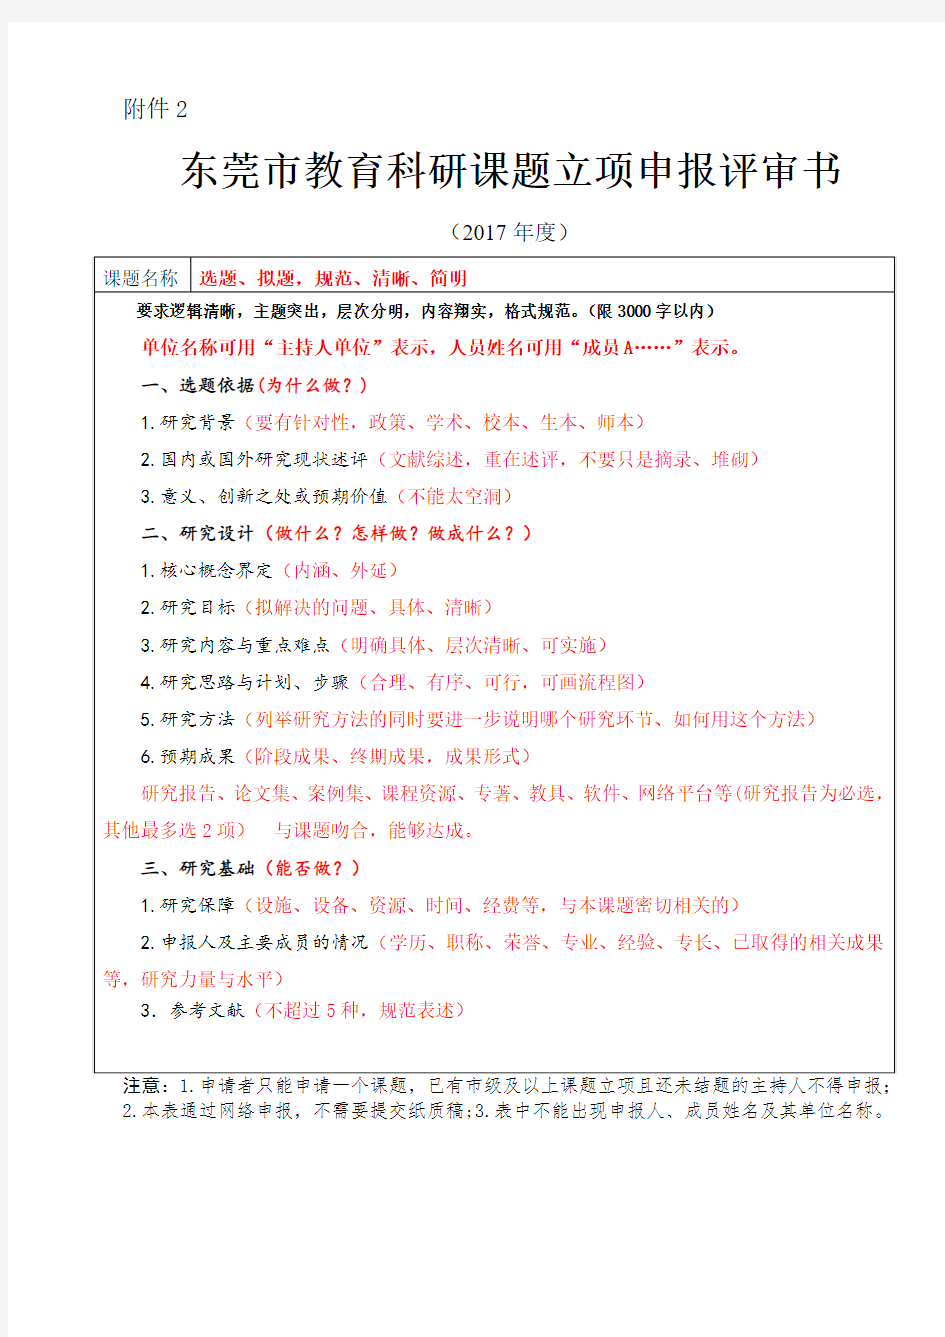 东莞市教育科研课题立项申报评审书(2017年版)